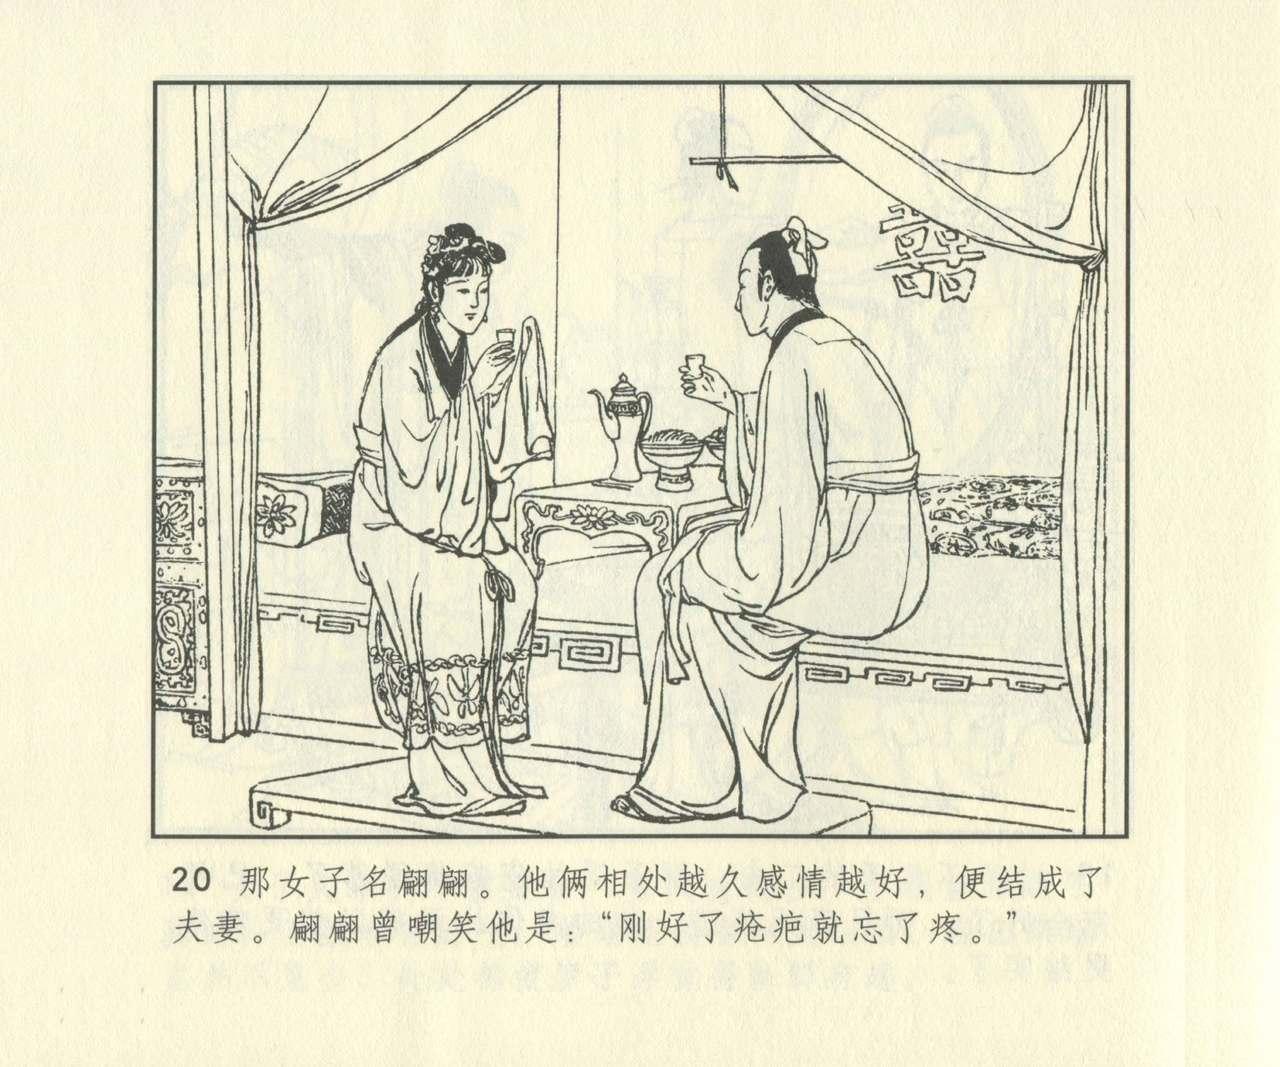 聊斋志异 张玮等绘 天津人民美术出版社 卷二十一 ~ 三十 636